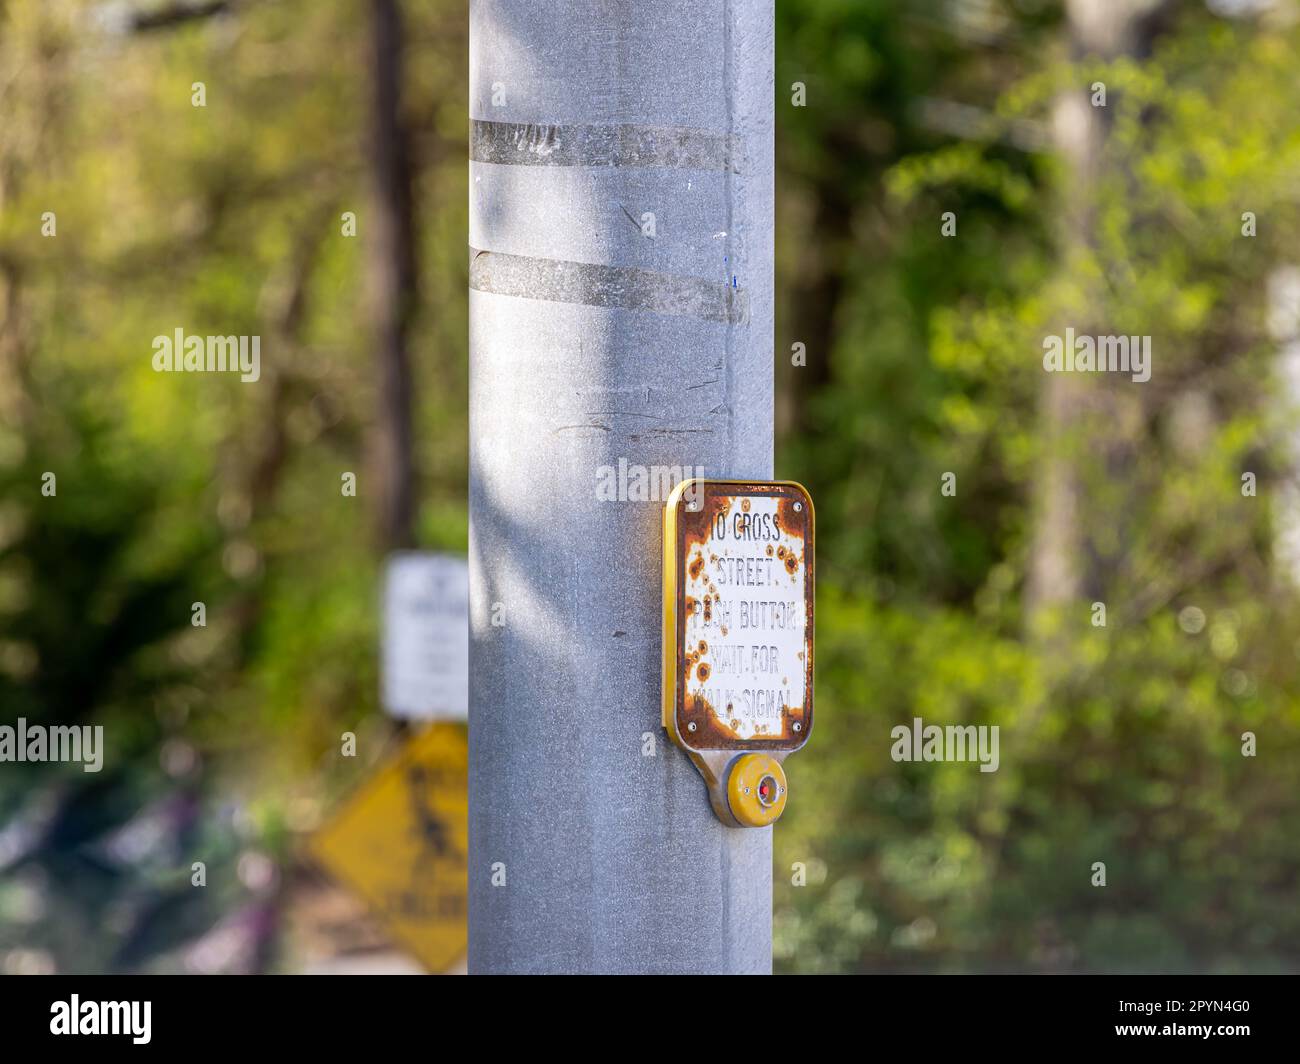 Detailbild eines alten Schildes und Druckknopfes, das die Ampel aktiviert, damit jemand die Straße überqueren kann Stockfoto